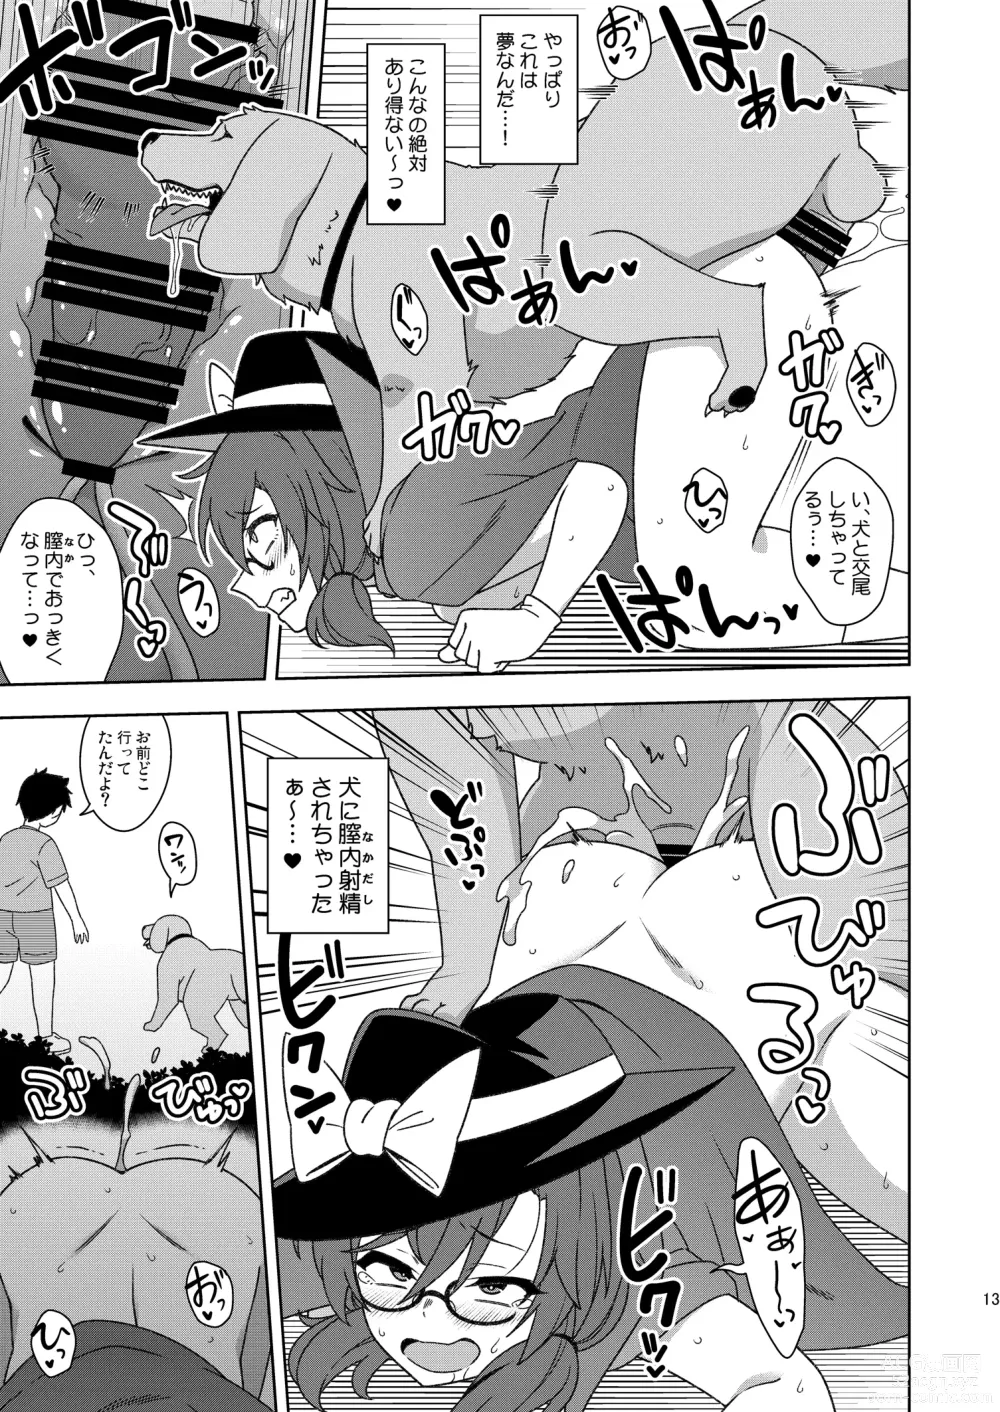 Page 12 of doujinshi Korewa kitto yumedakara!